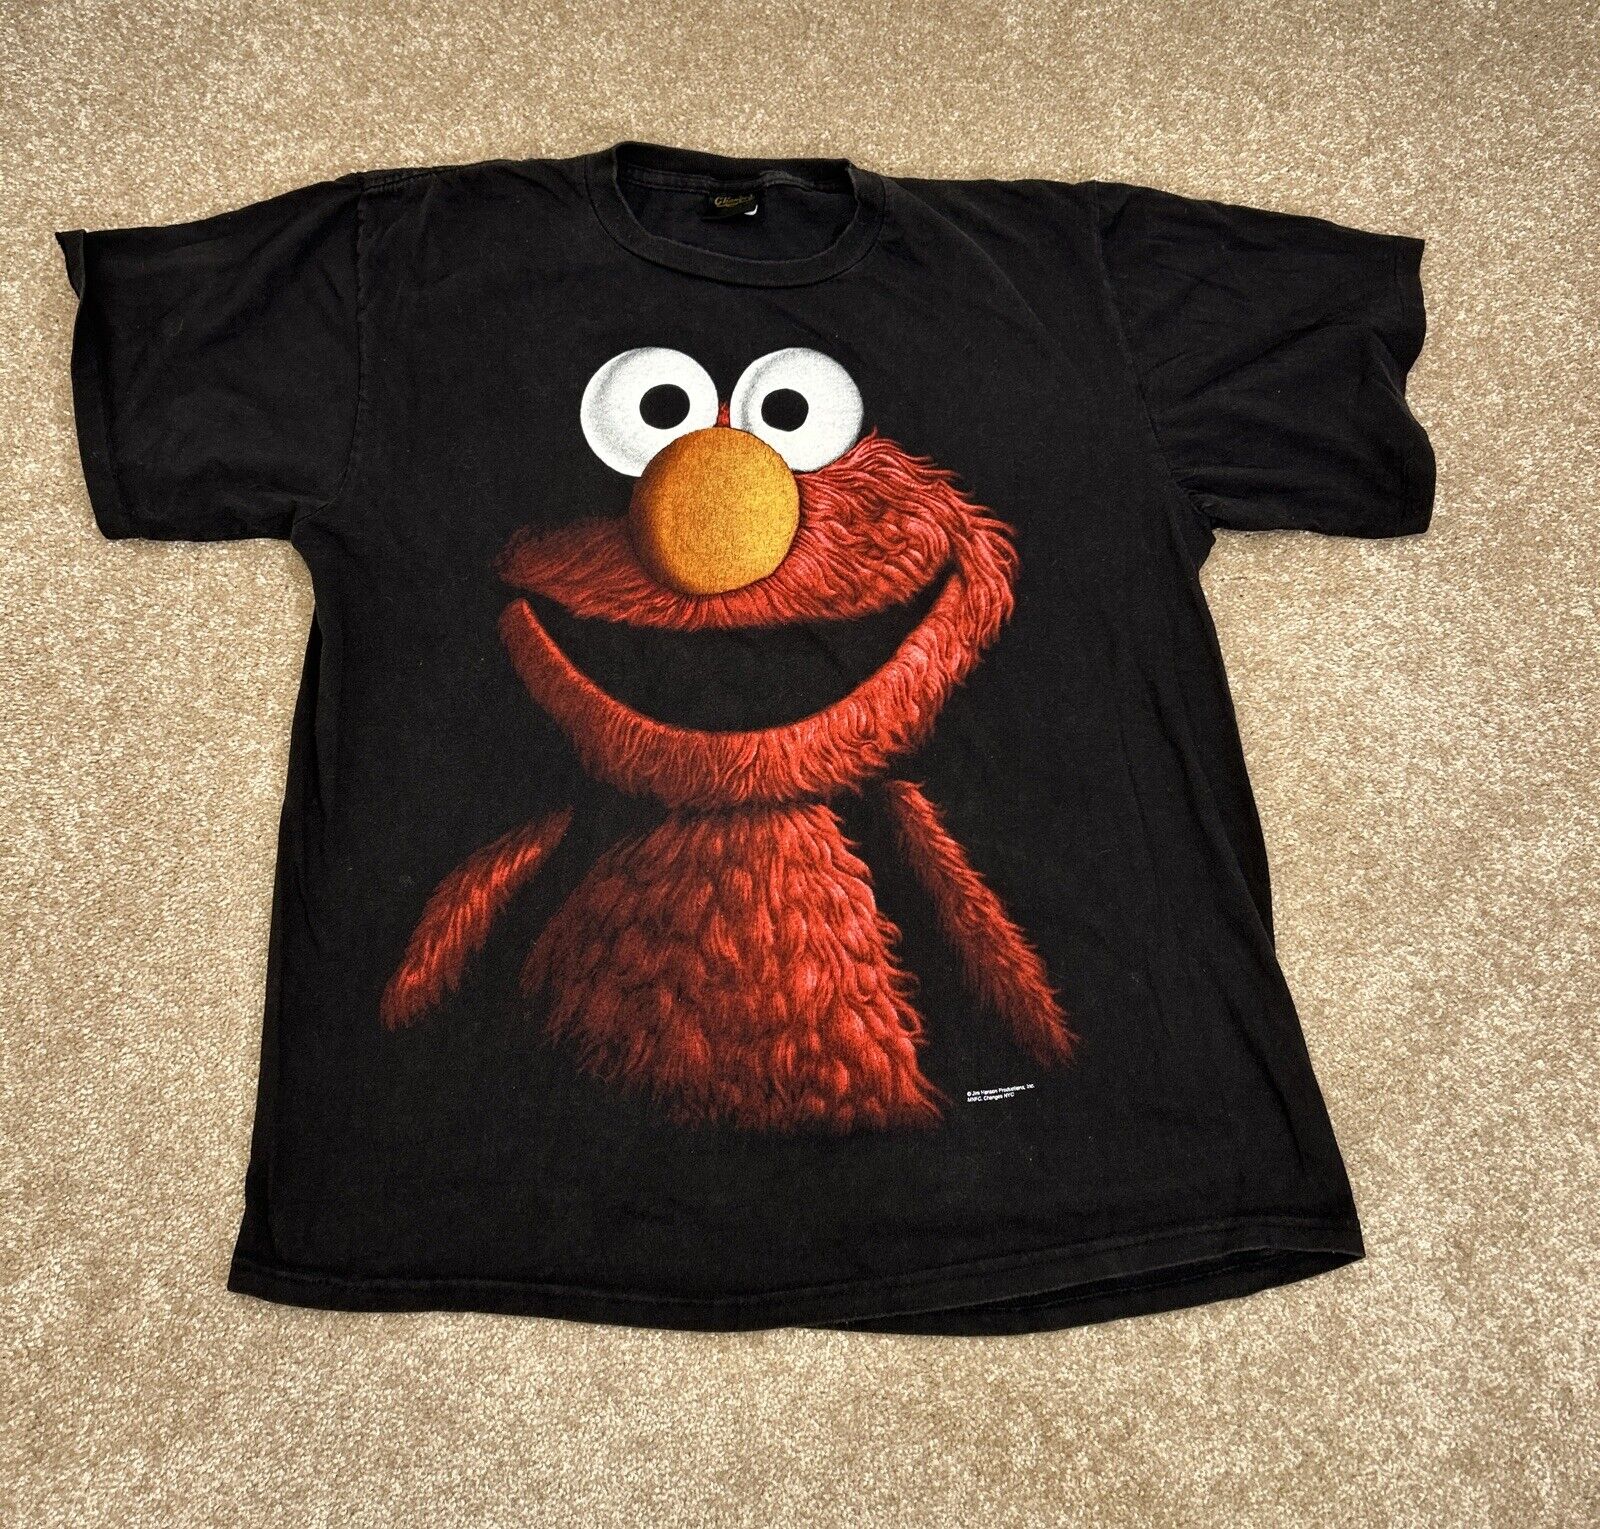 Rare Vintage CHANGES Elmo Sesame Street Big Face Portrait T Shirt 90s Black XL